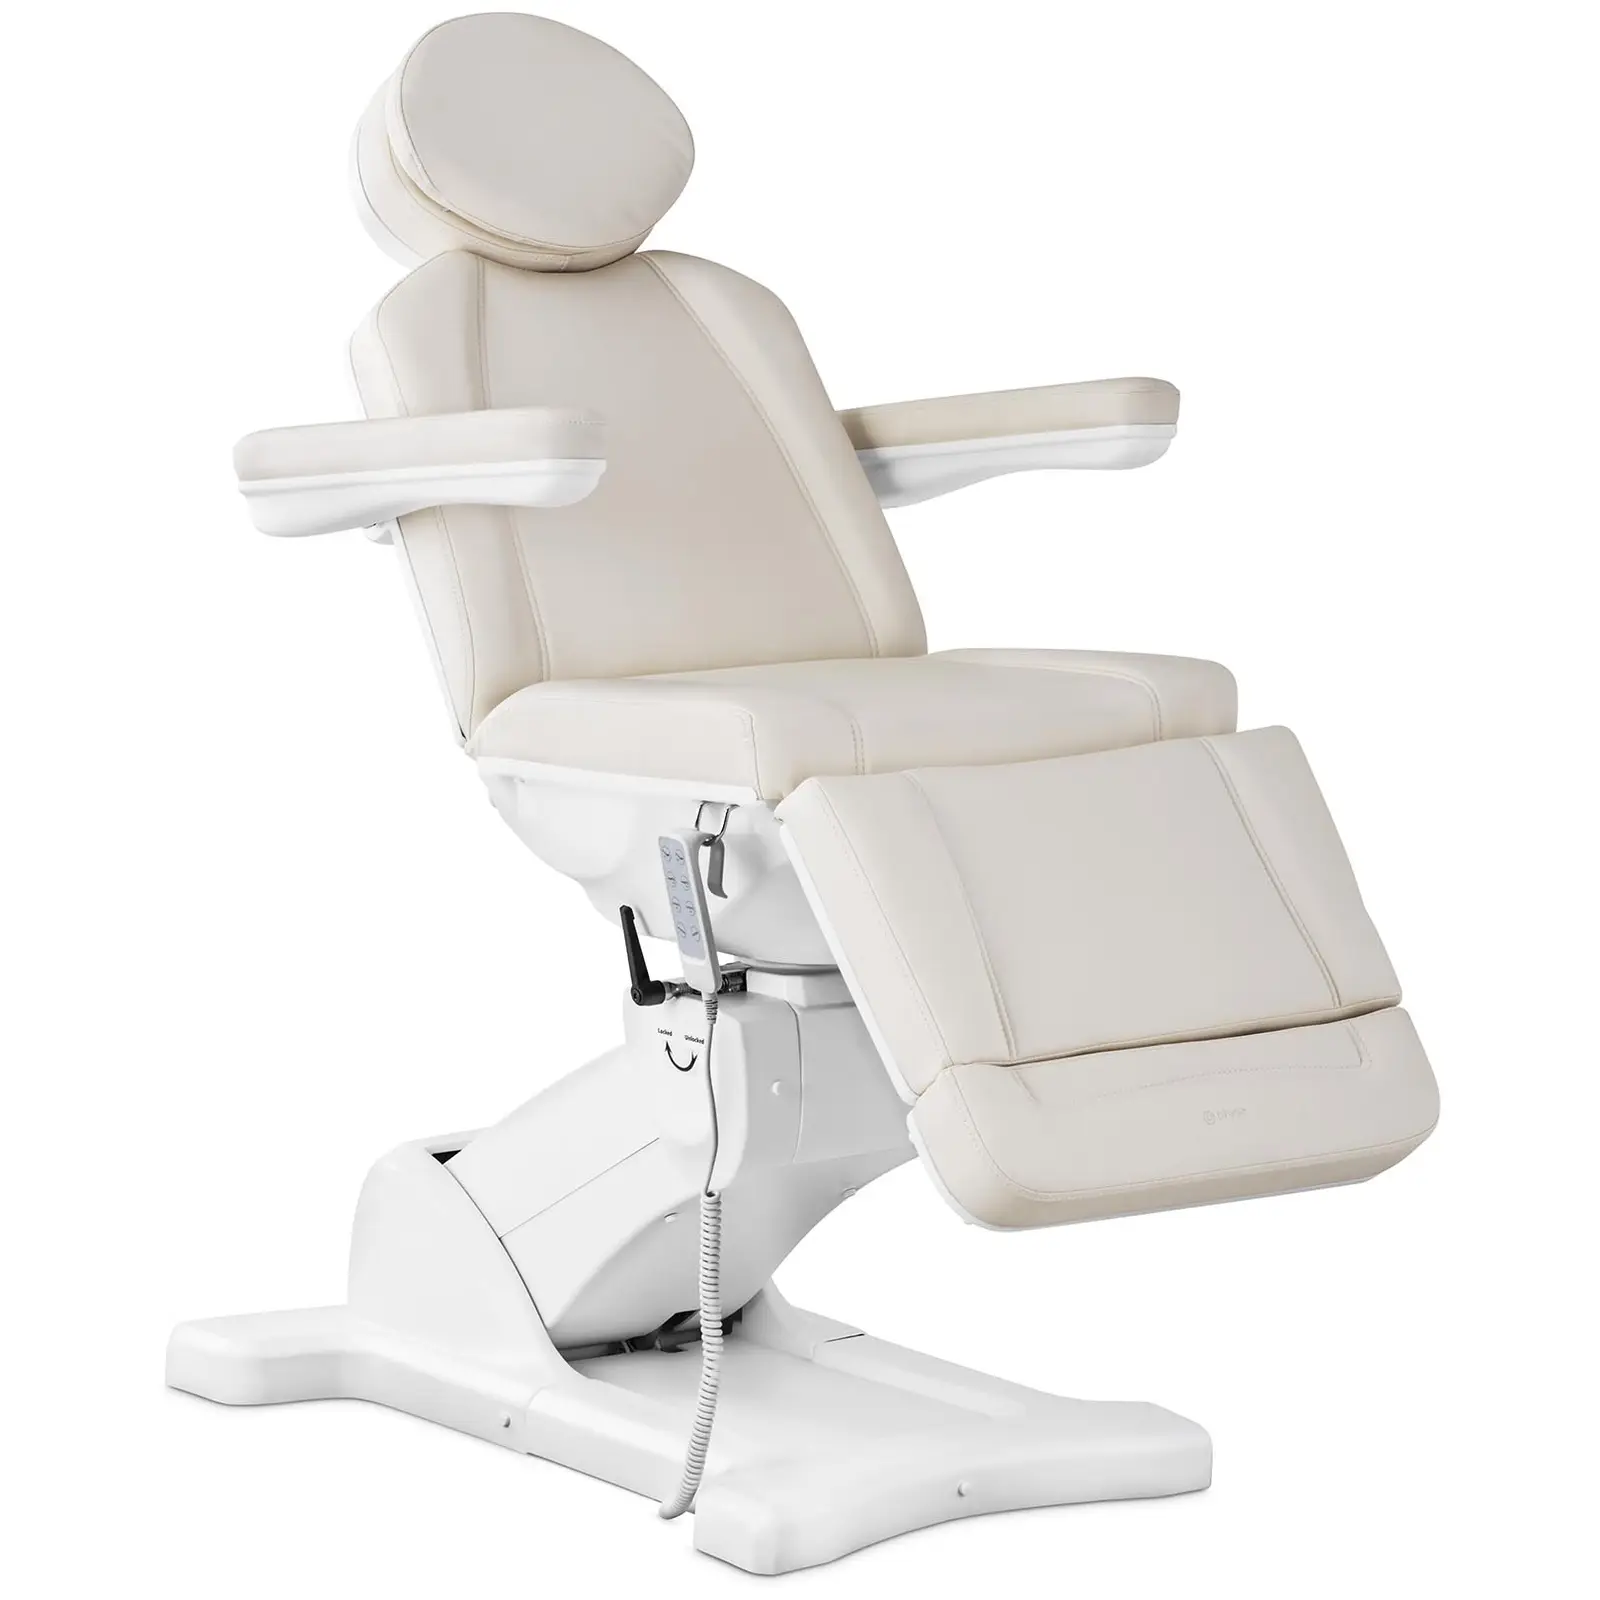 Fotel kosmetyczny elektryczny - 350 W - 150 kg - Ecru, Biały